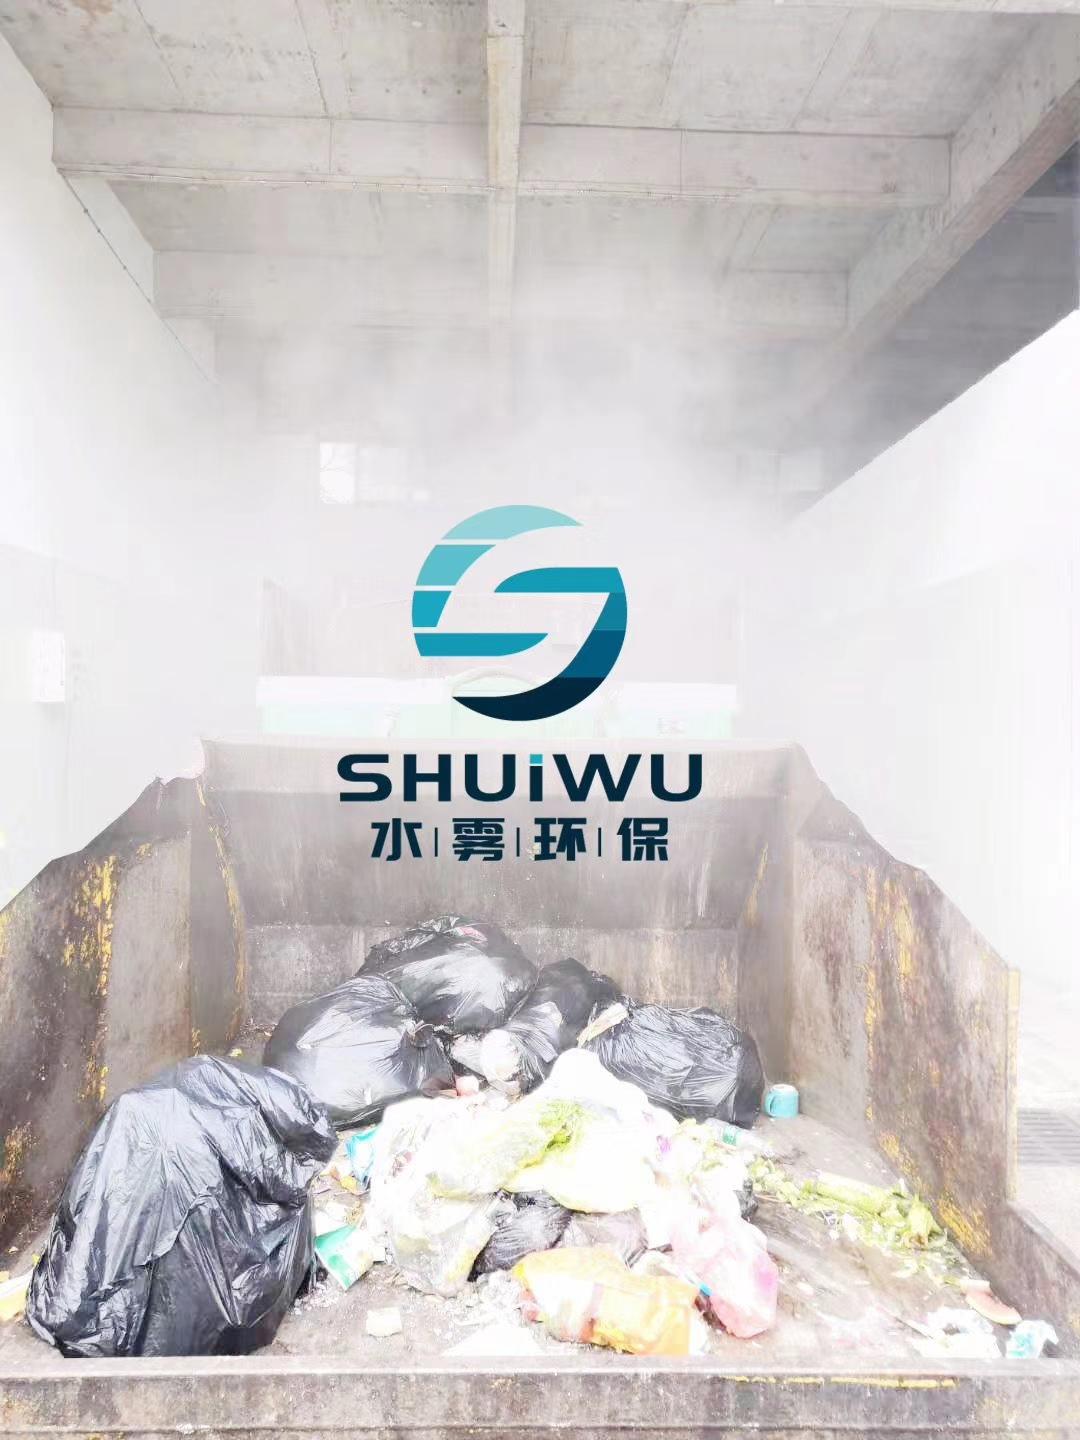 武汉江岸垃圾站消毒硬件配备,自动水系雾喷水雾强